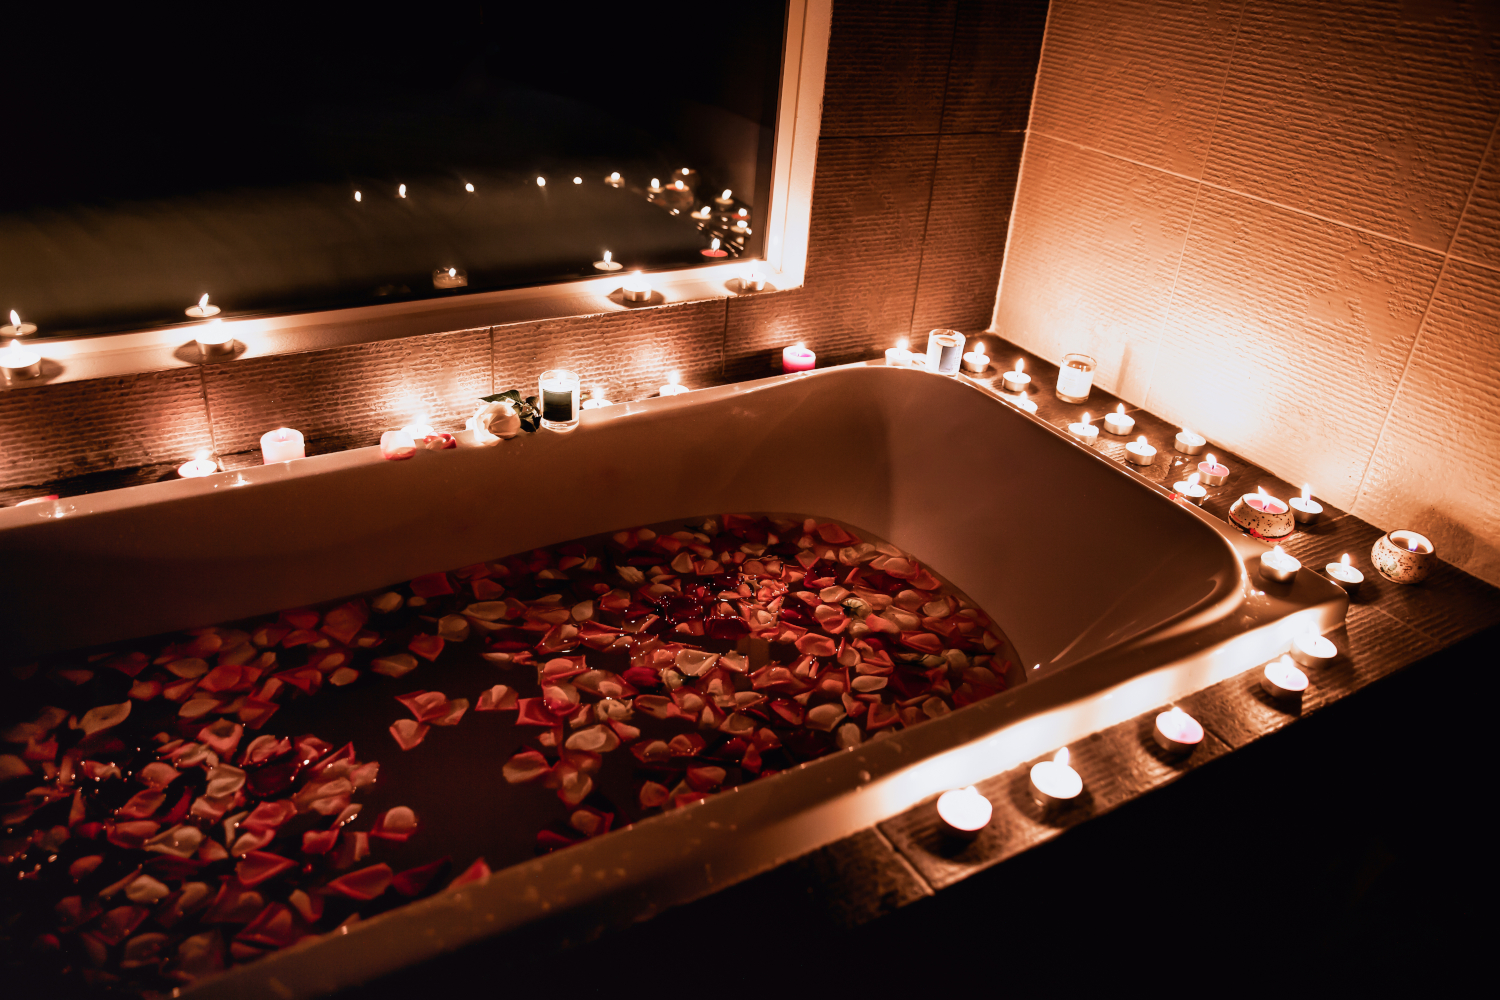 Enzovoorts ontvangen Jabeth Wilson Romantische badkamer voor Valentijn | Steylaerts